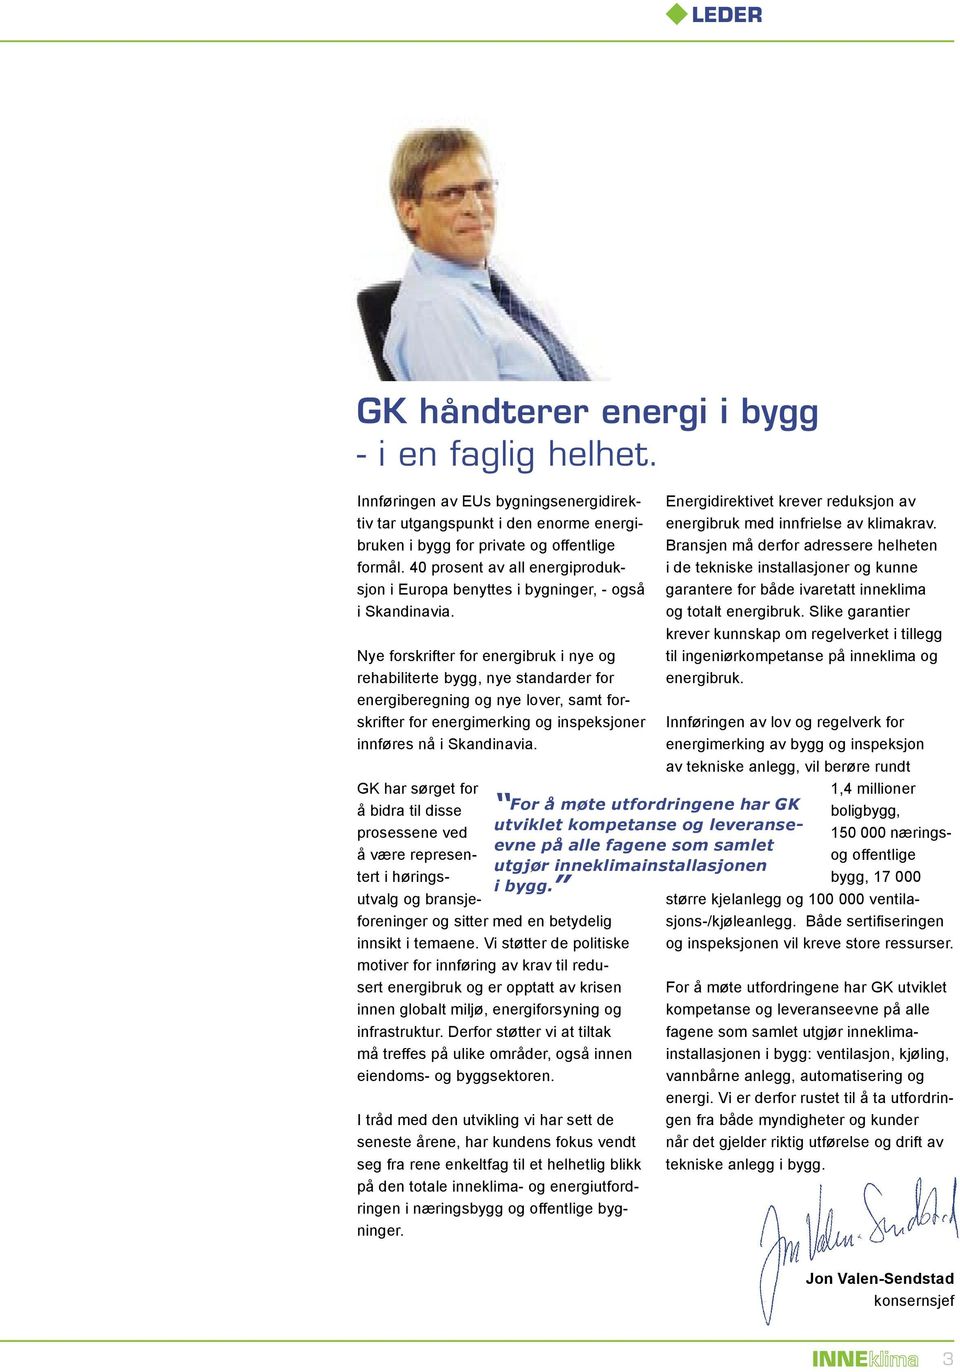 Nye forskrifter for energibruk i nye og rehabiliterte bygg, nye standarder for energiberegning og nye lover, samt forskrifter for energimerking og inspeksjoner innføres nå i Skandinavia.